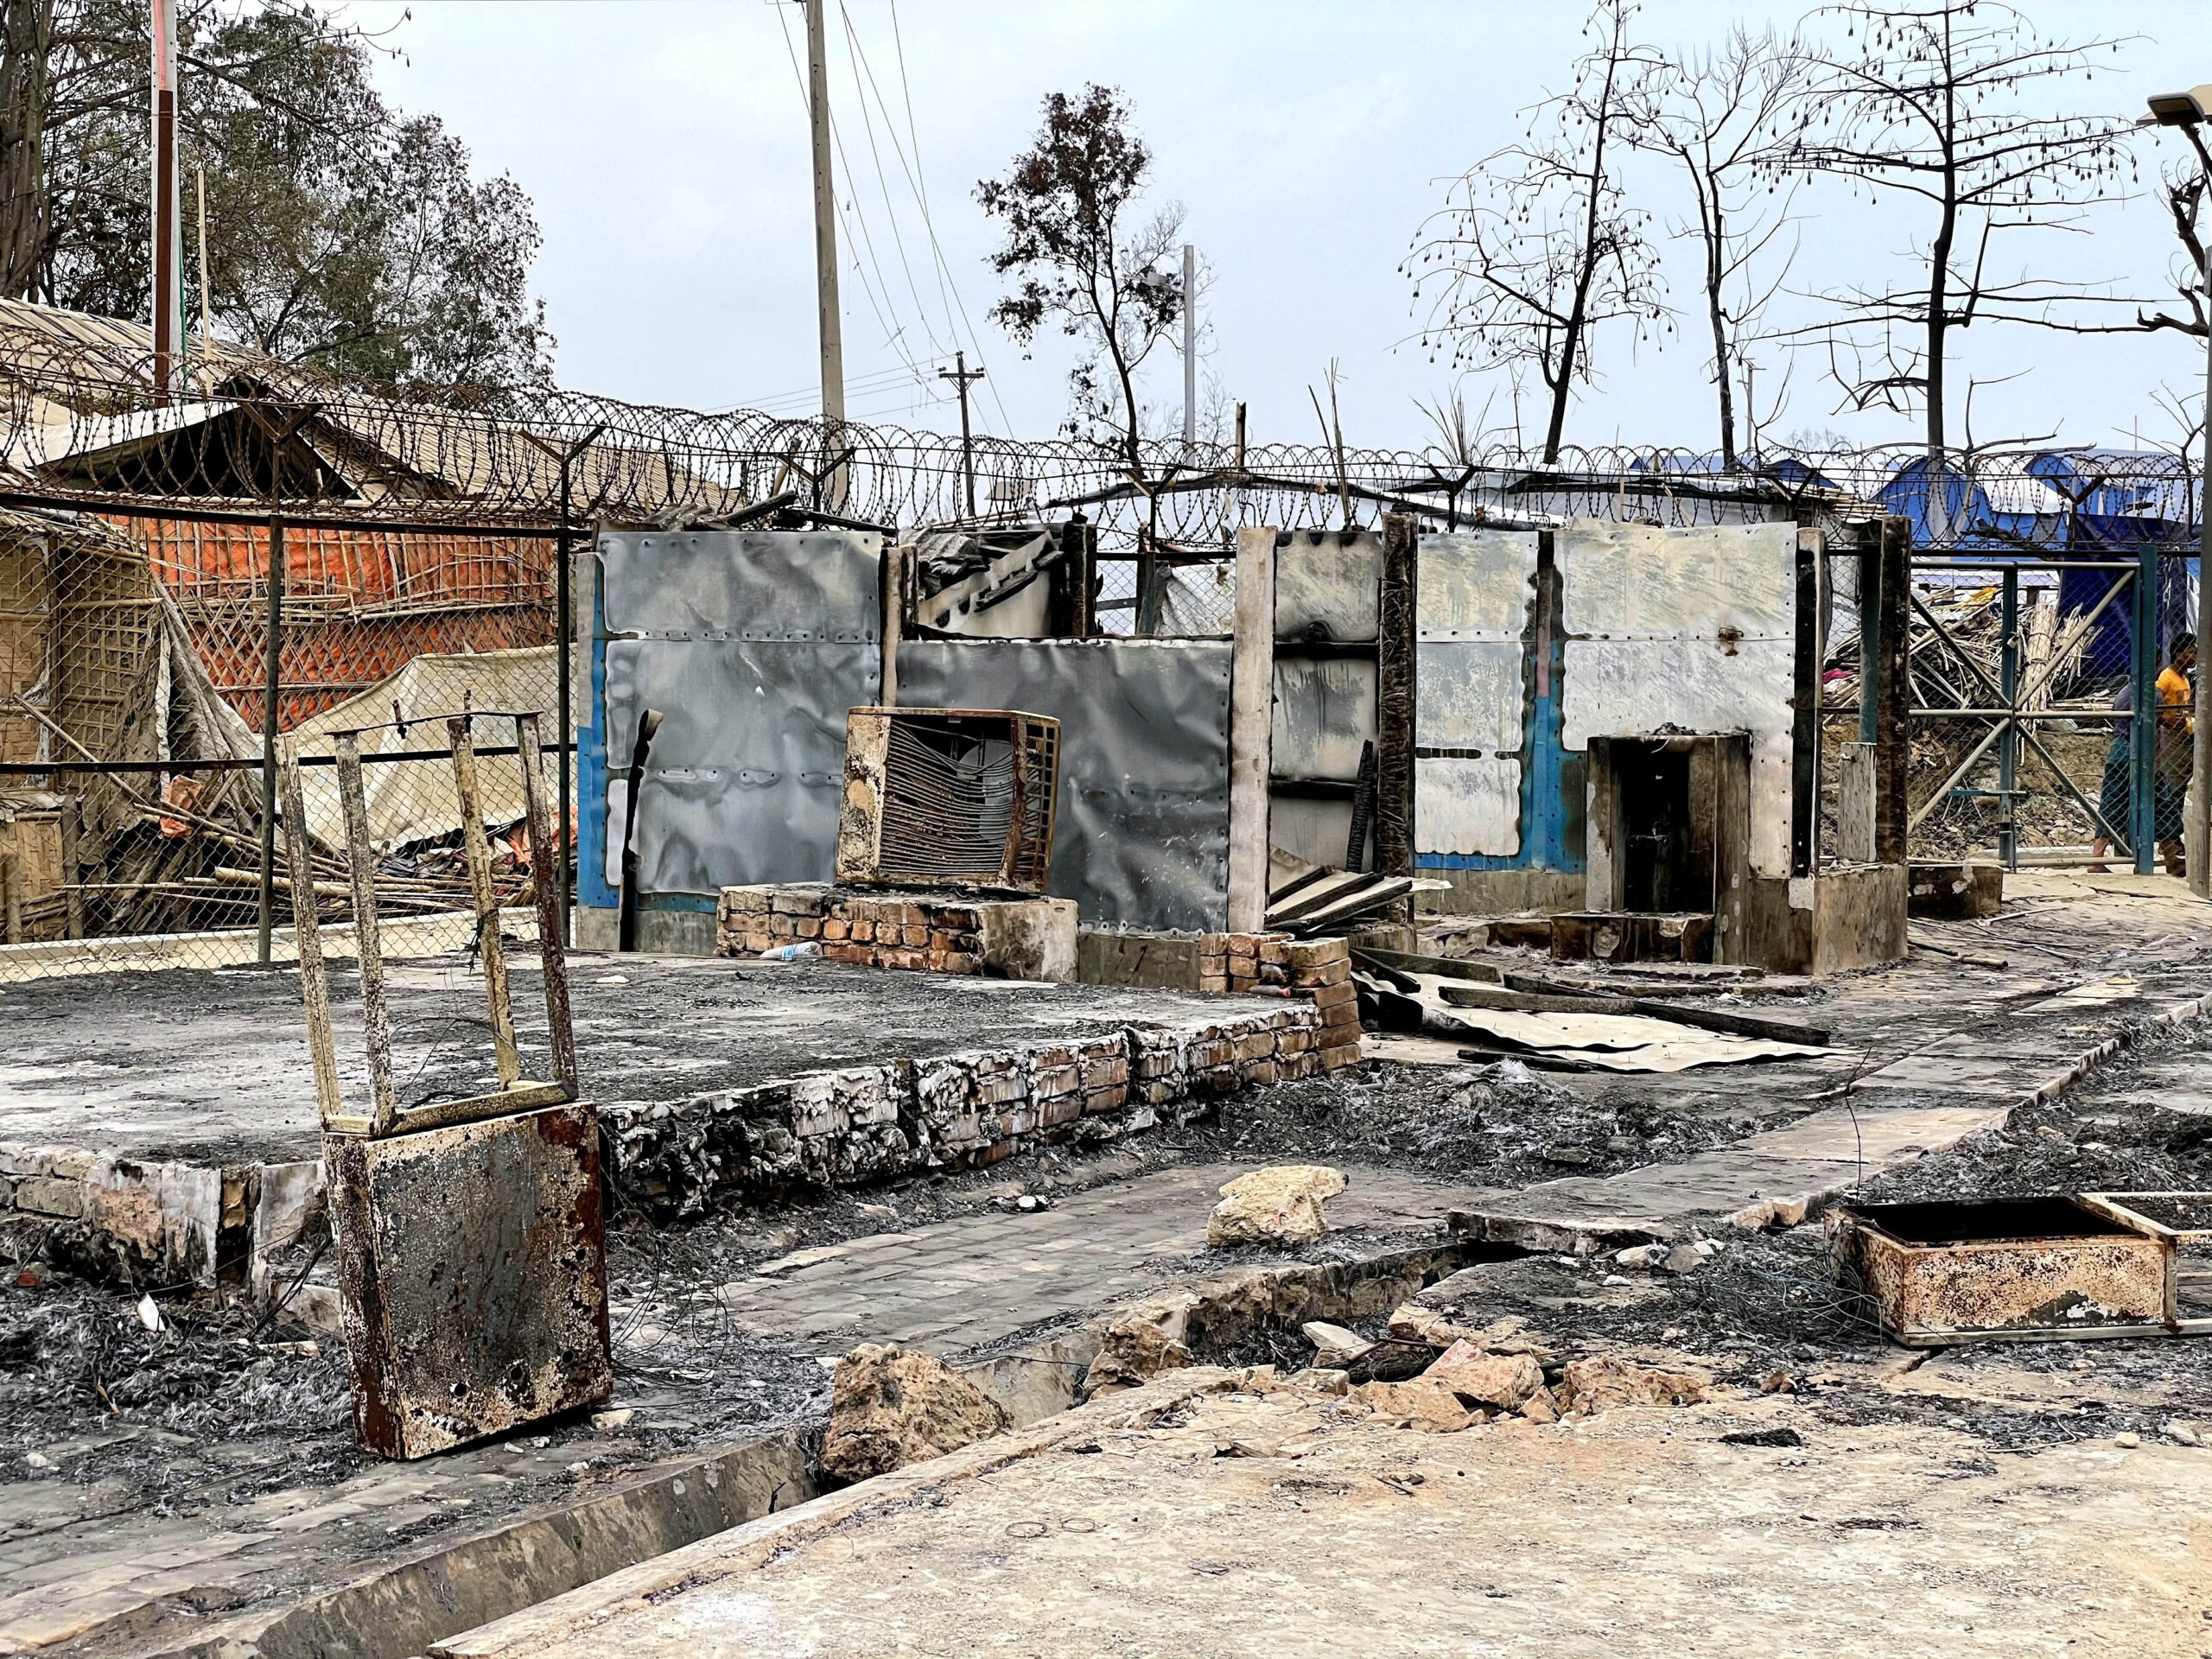 Des installations essentielles telles que des centres d'enregistrement et des cliniques ont été gravement endommagées lors de l'incendie de mars 2021. © UNHCR/Iffath Yeasmine